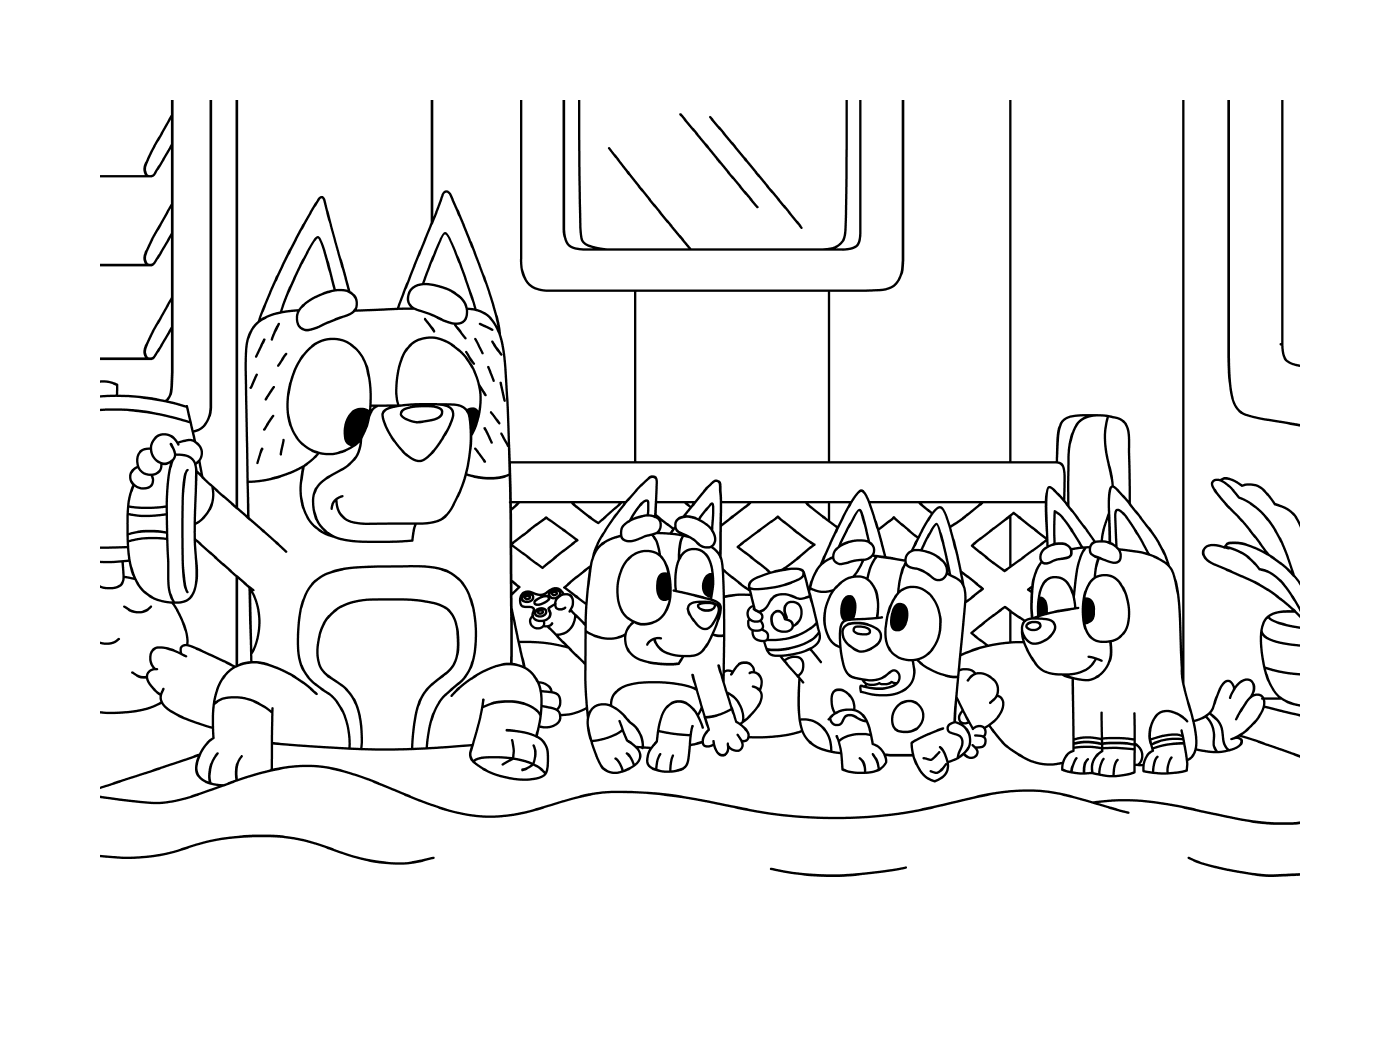  Eine Gruppe Katzen, die nebeneinander sitzen 